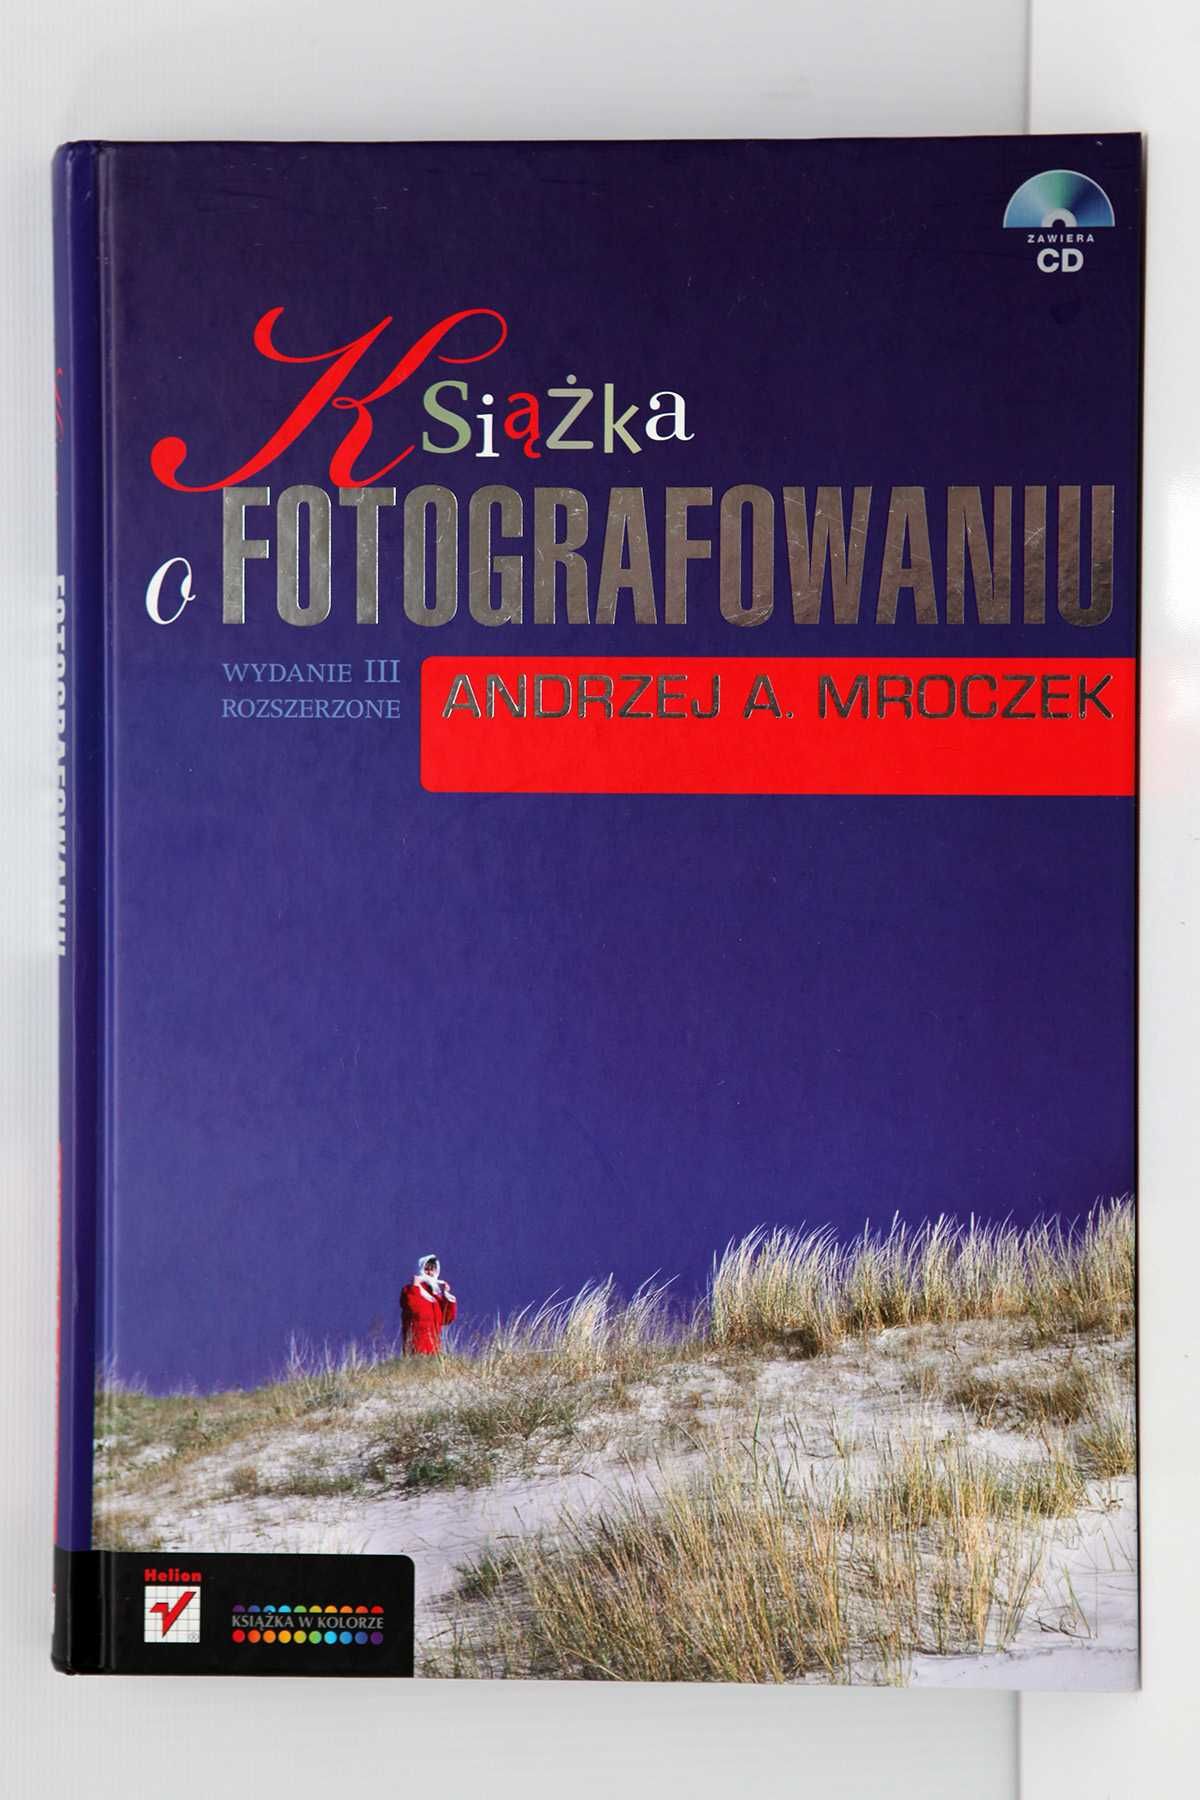 Książka o fotografowaniu Andrzej A.Mroczek płyta CD